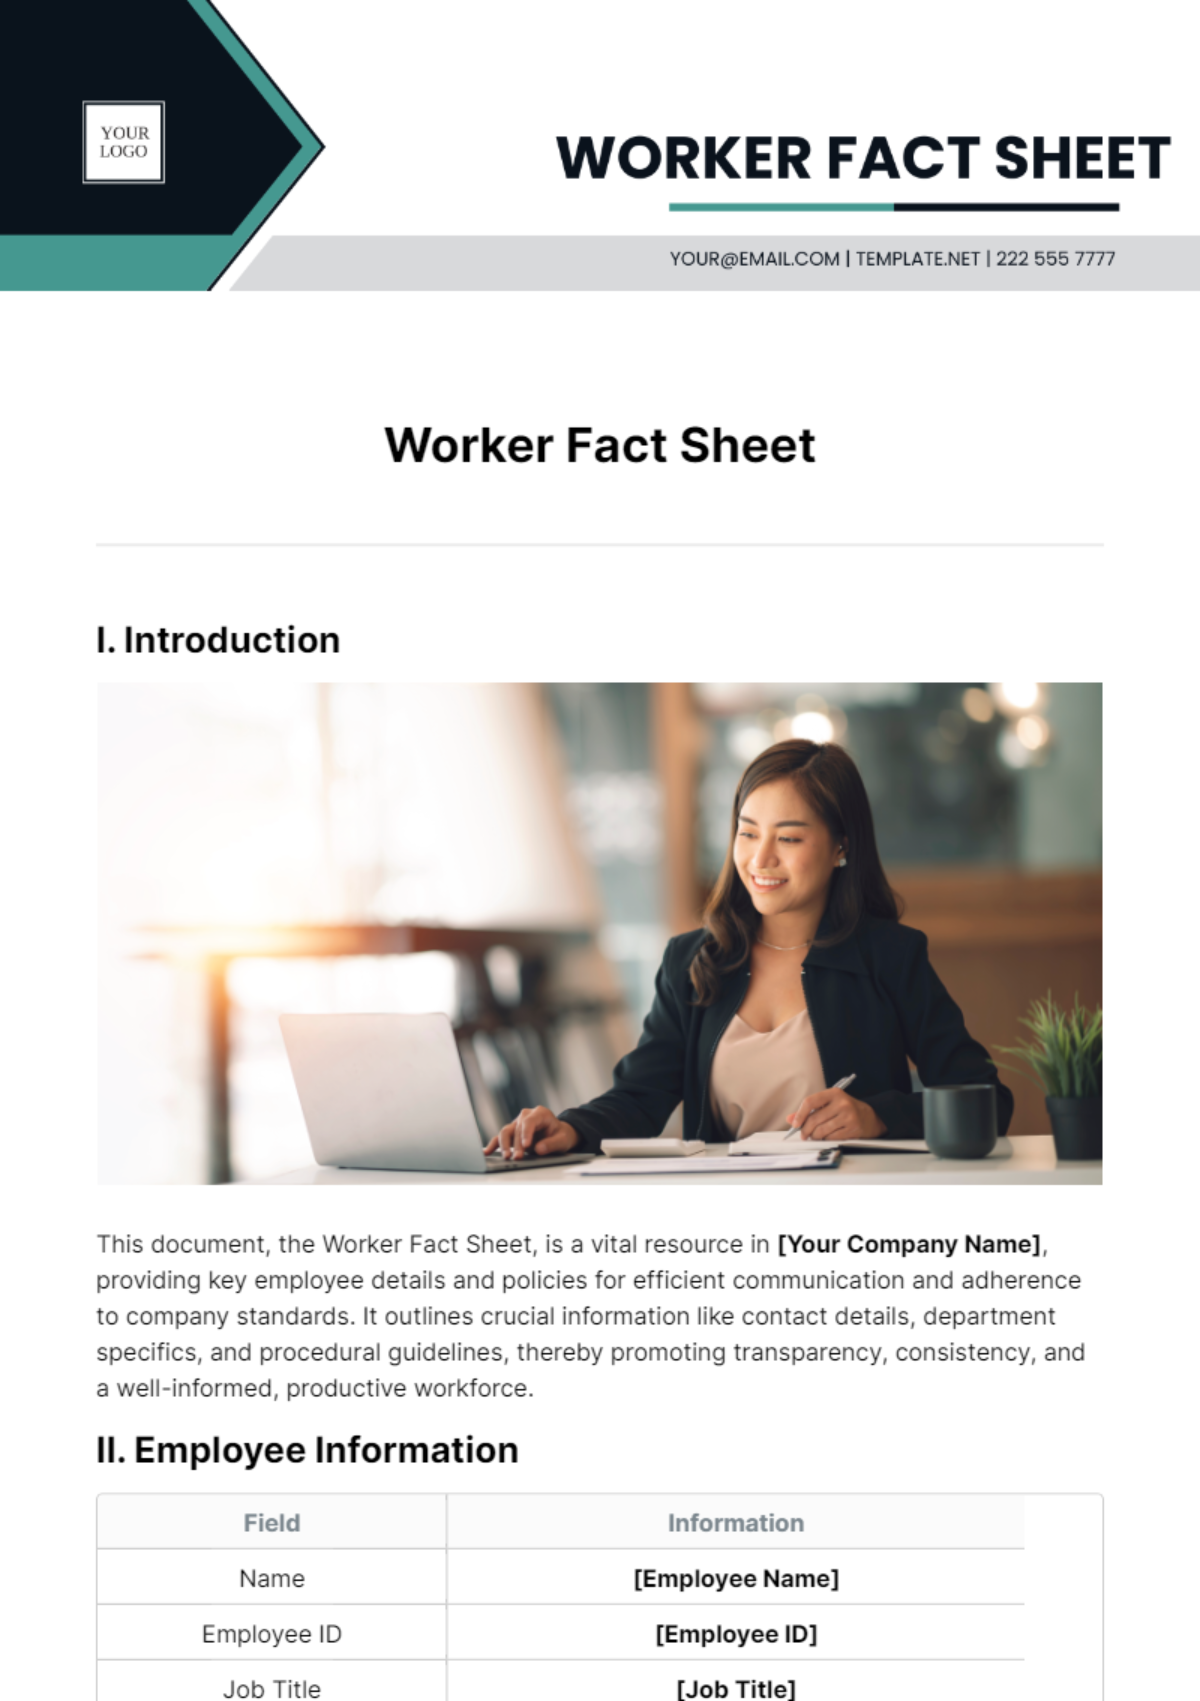 Worker Fact Sheet Template